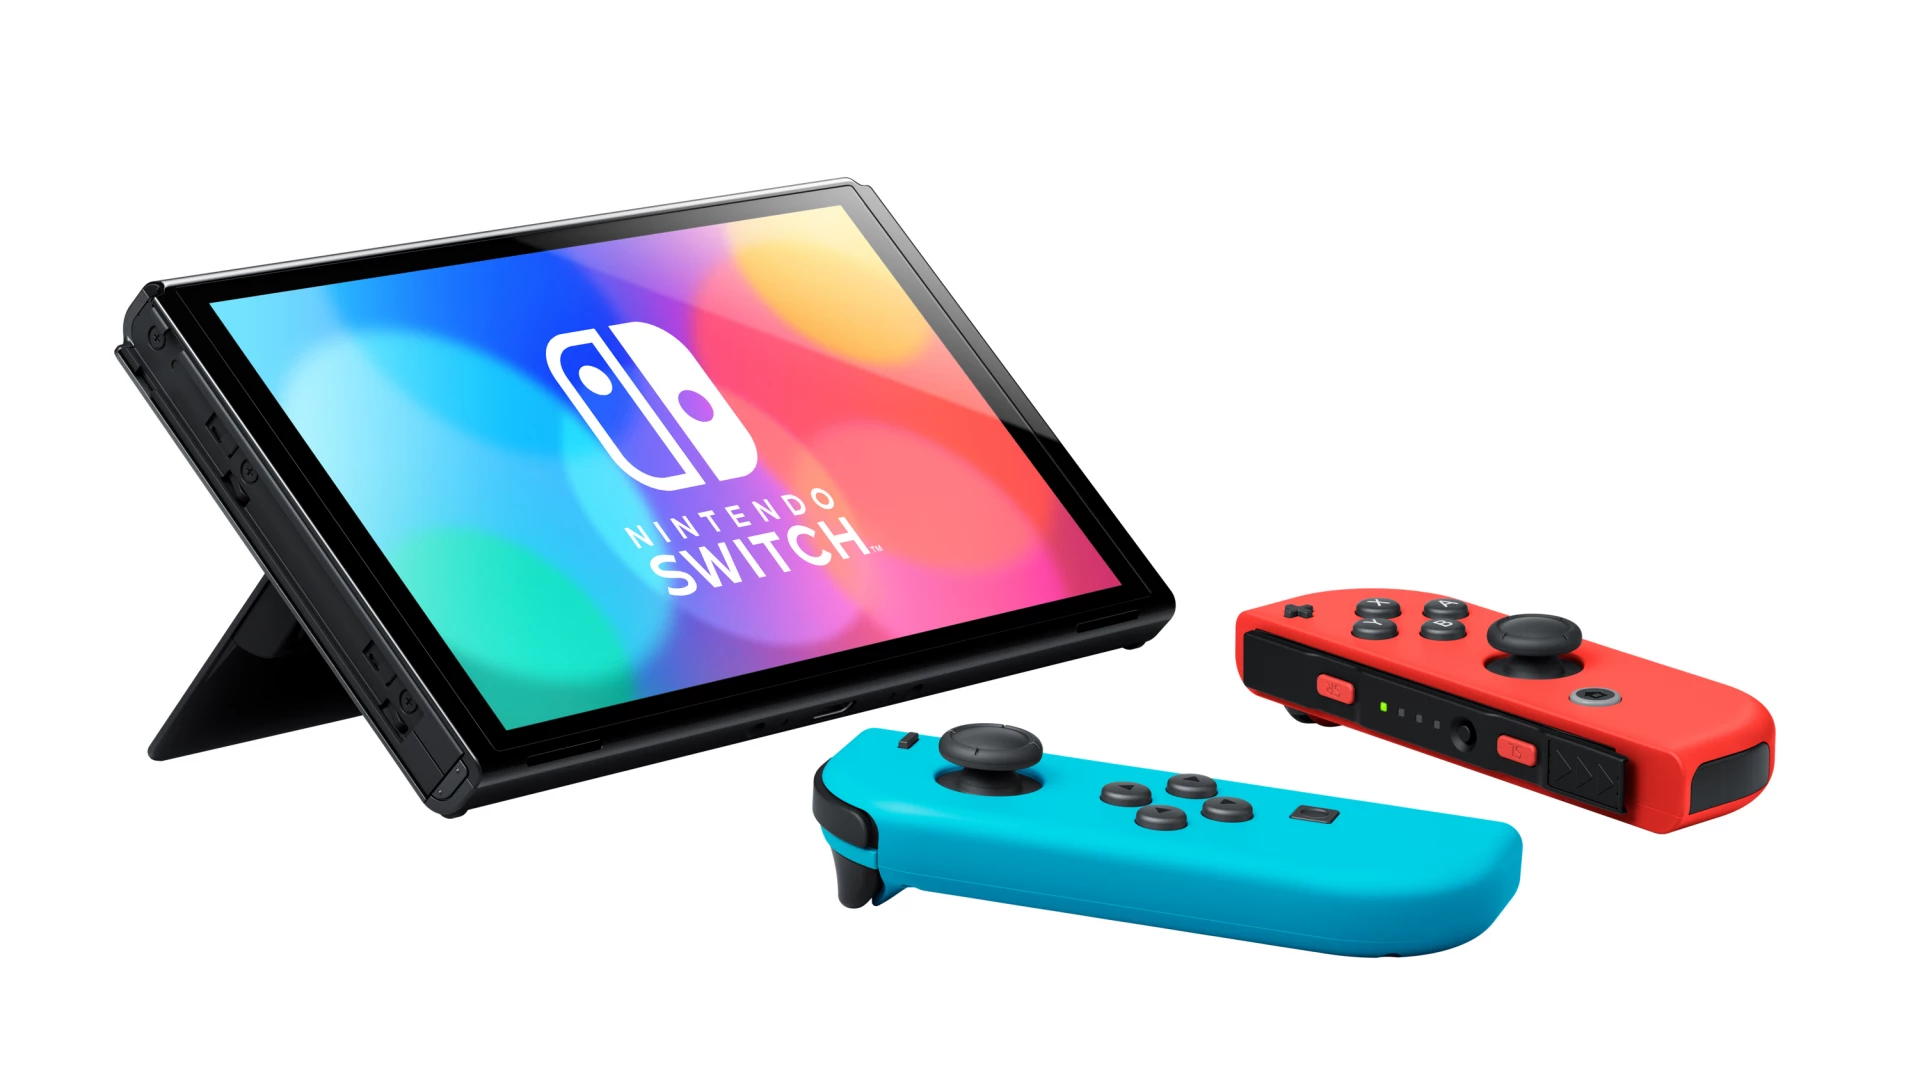 Nintendo Switch OLED-model - Red/Blue voor de Nintendo Switch kopen op nedgame.nl